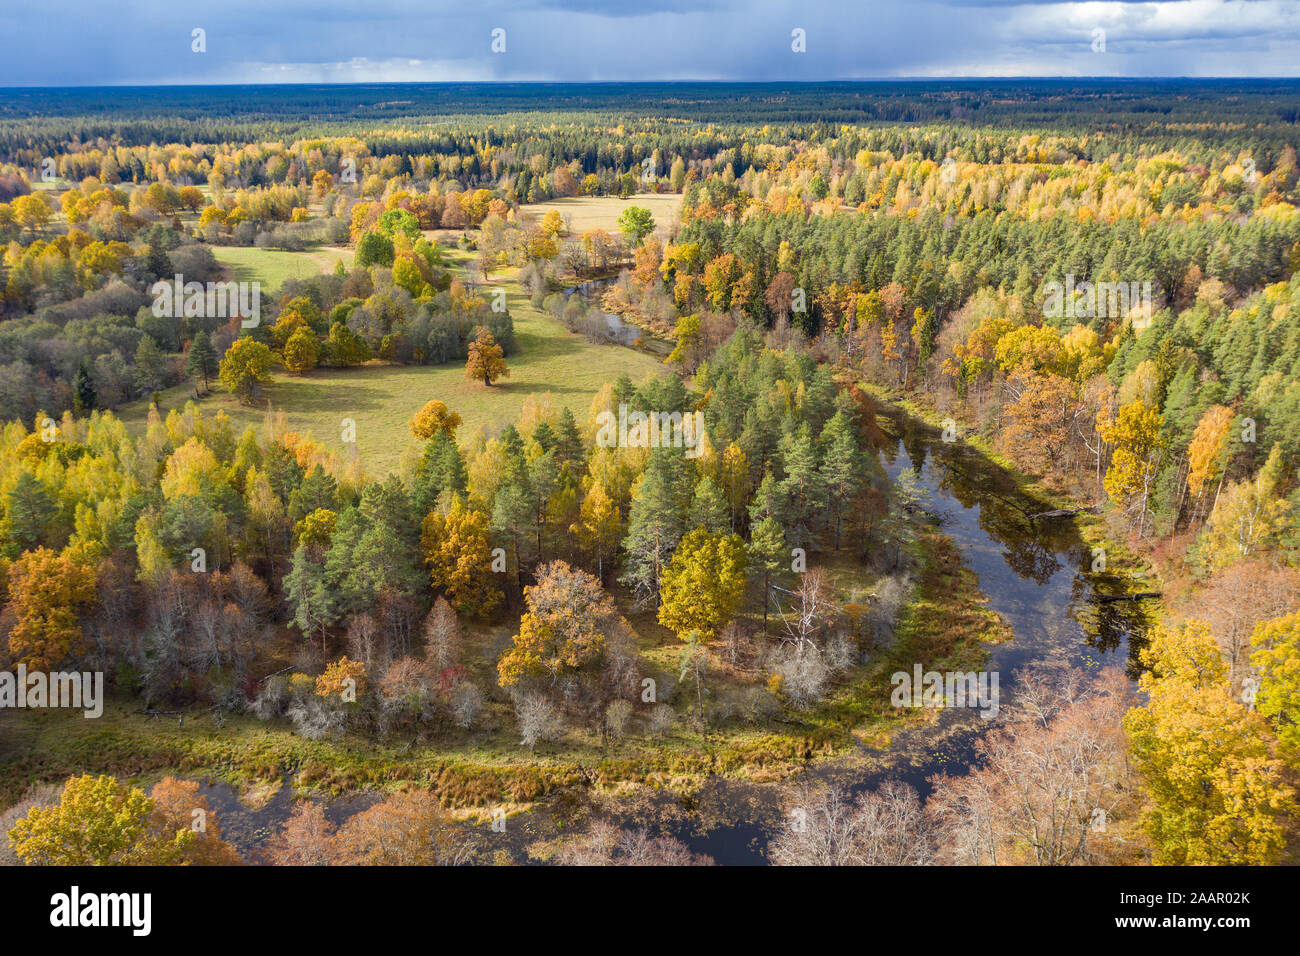 Bosco in autunno colori. Alberi colorati e un serpeggiante fiume azzurro. Rosso, giallo, arancione, verde di alberi decidui in caduta. Koiva national park, Lettonia, E Foto Stock